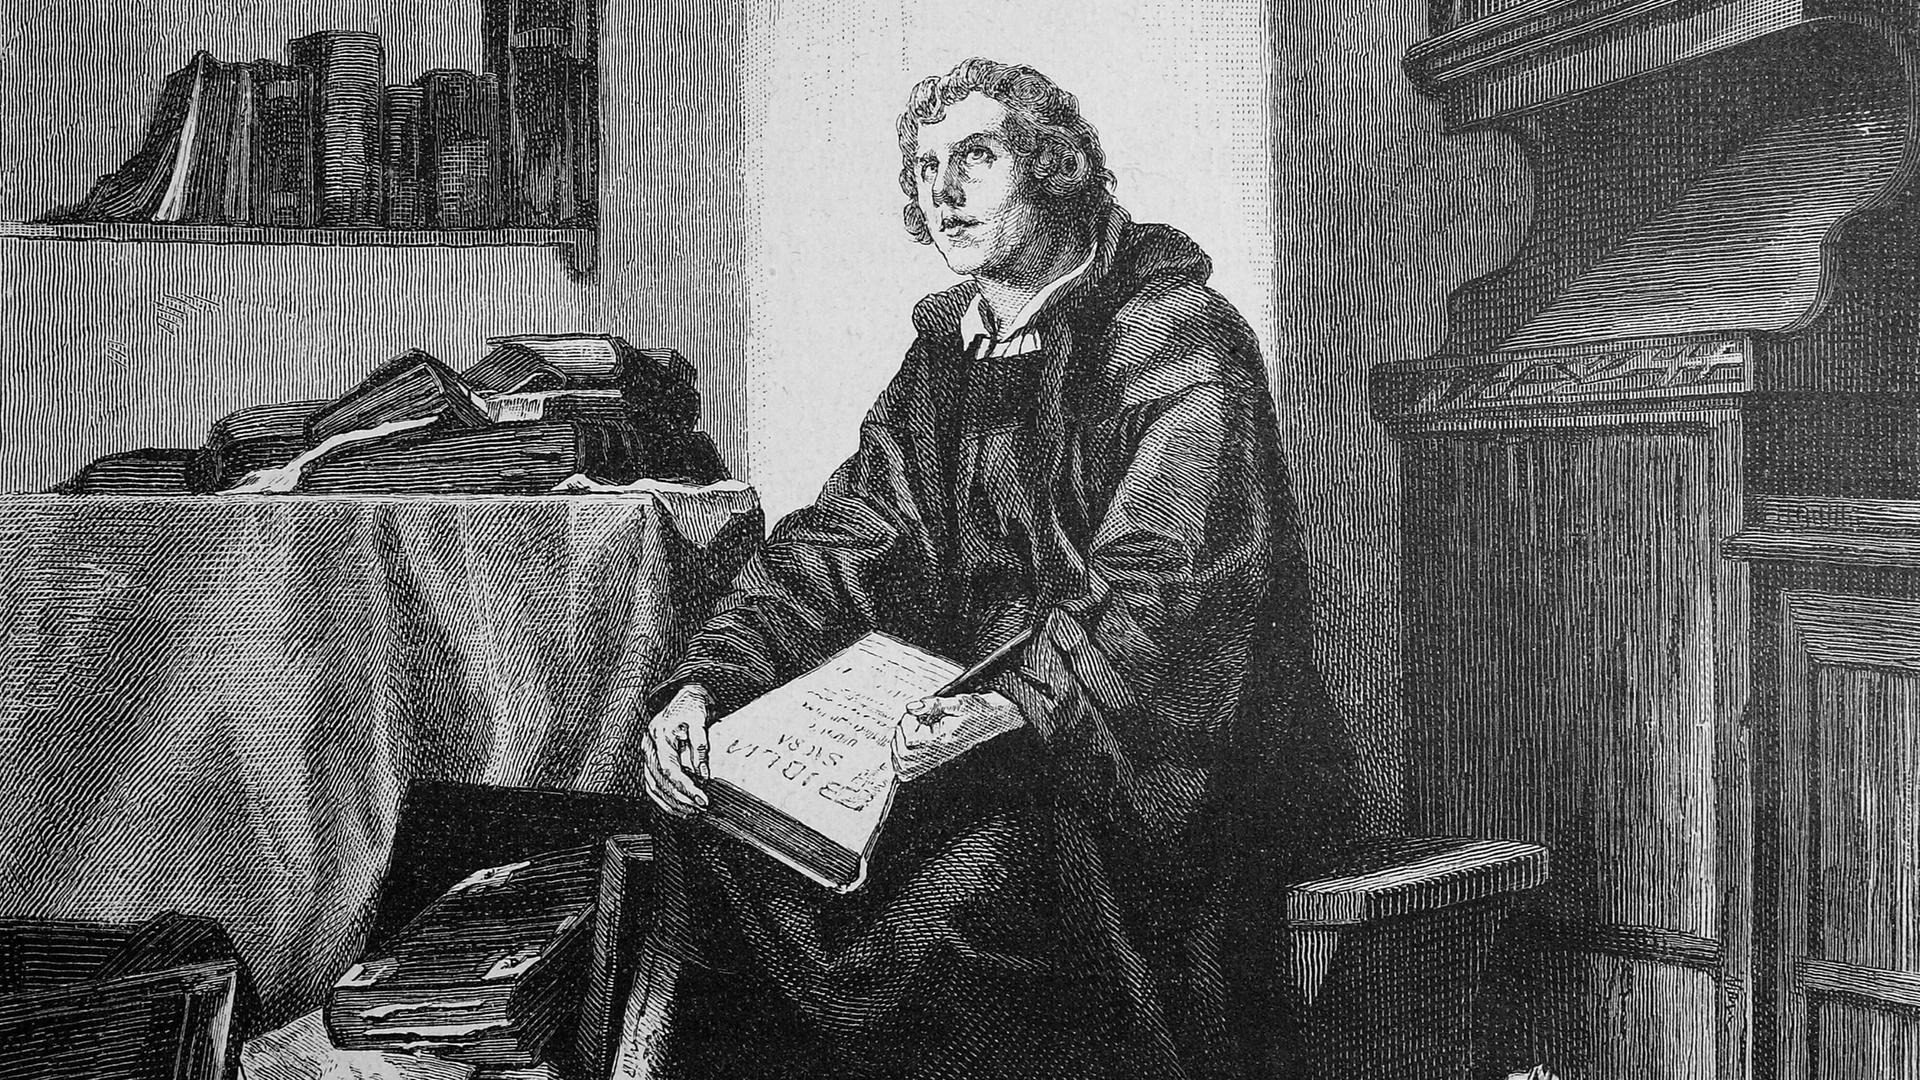 "Scholastische Studien auf der Schwelle zur Reformationszeit, Luther mit einer Bibel", ca.1515.